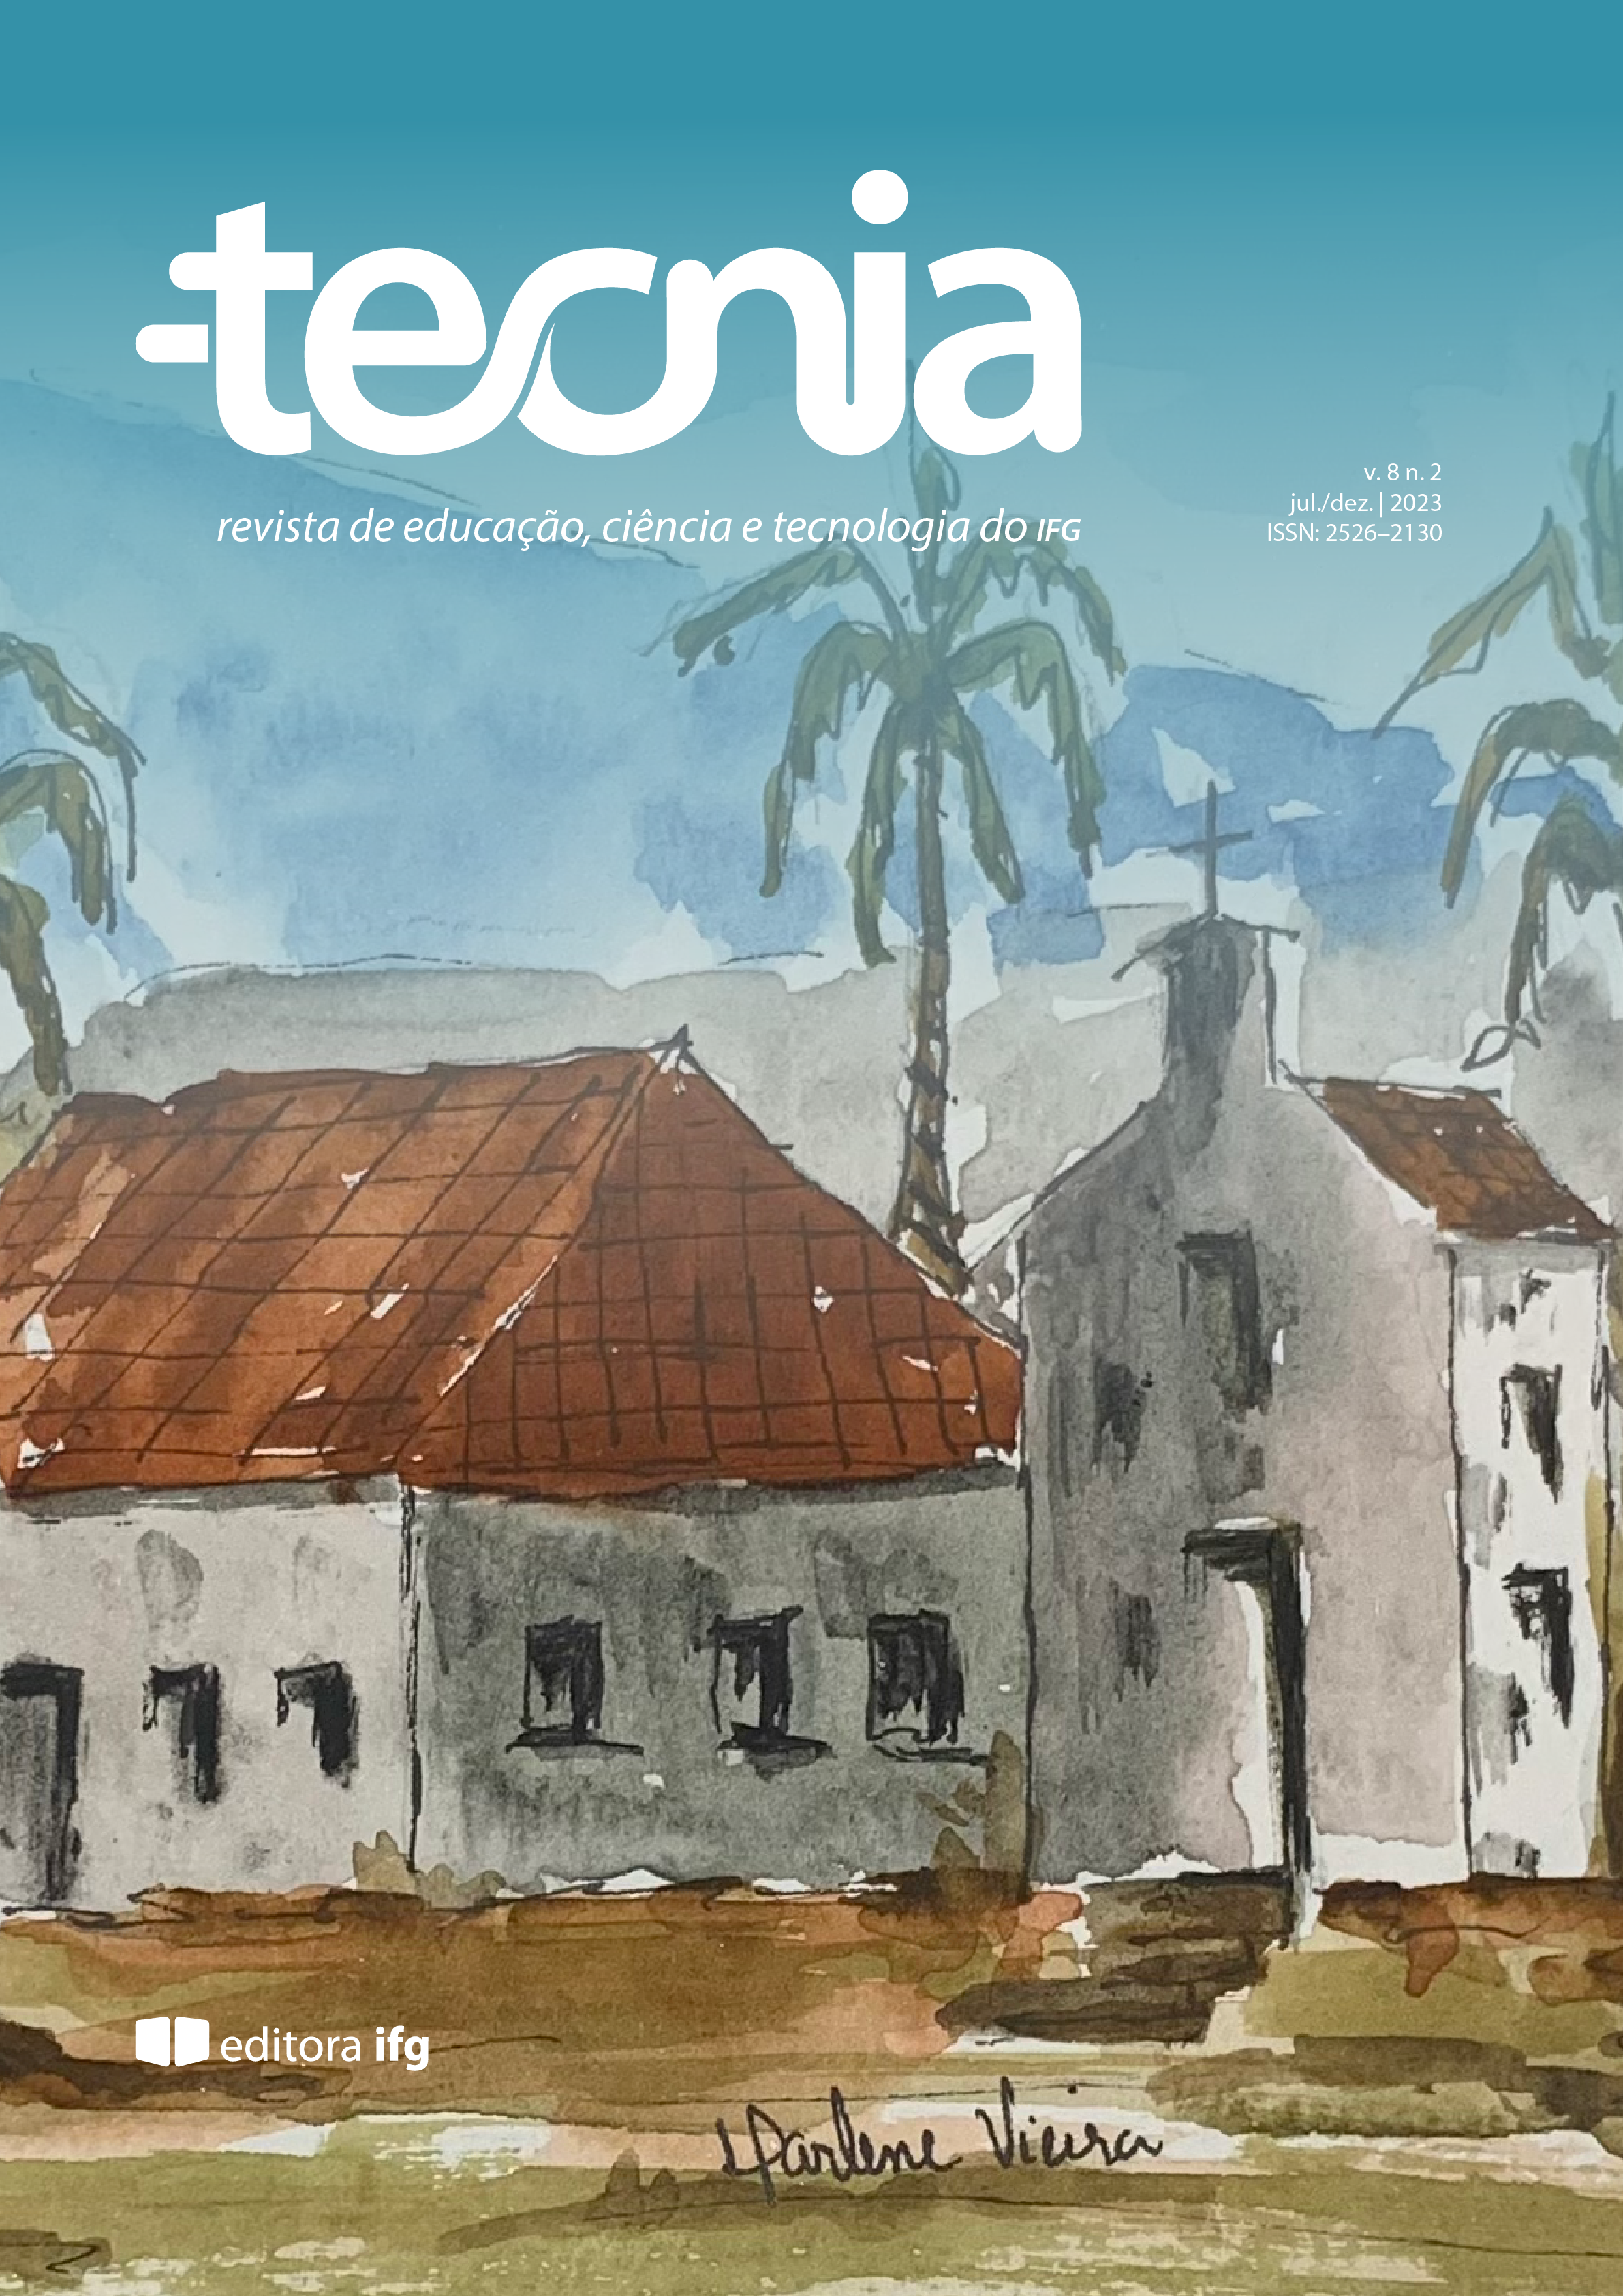 					Visualizar v. 8 n. 2 (2023): Revista Tecnia
				